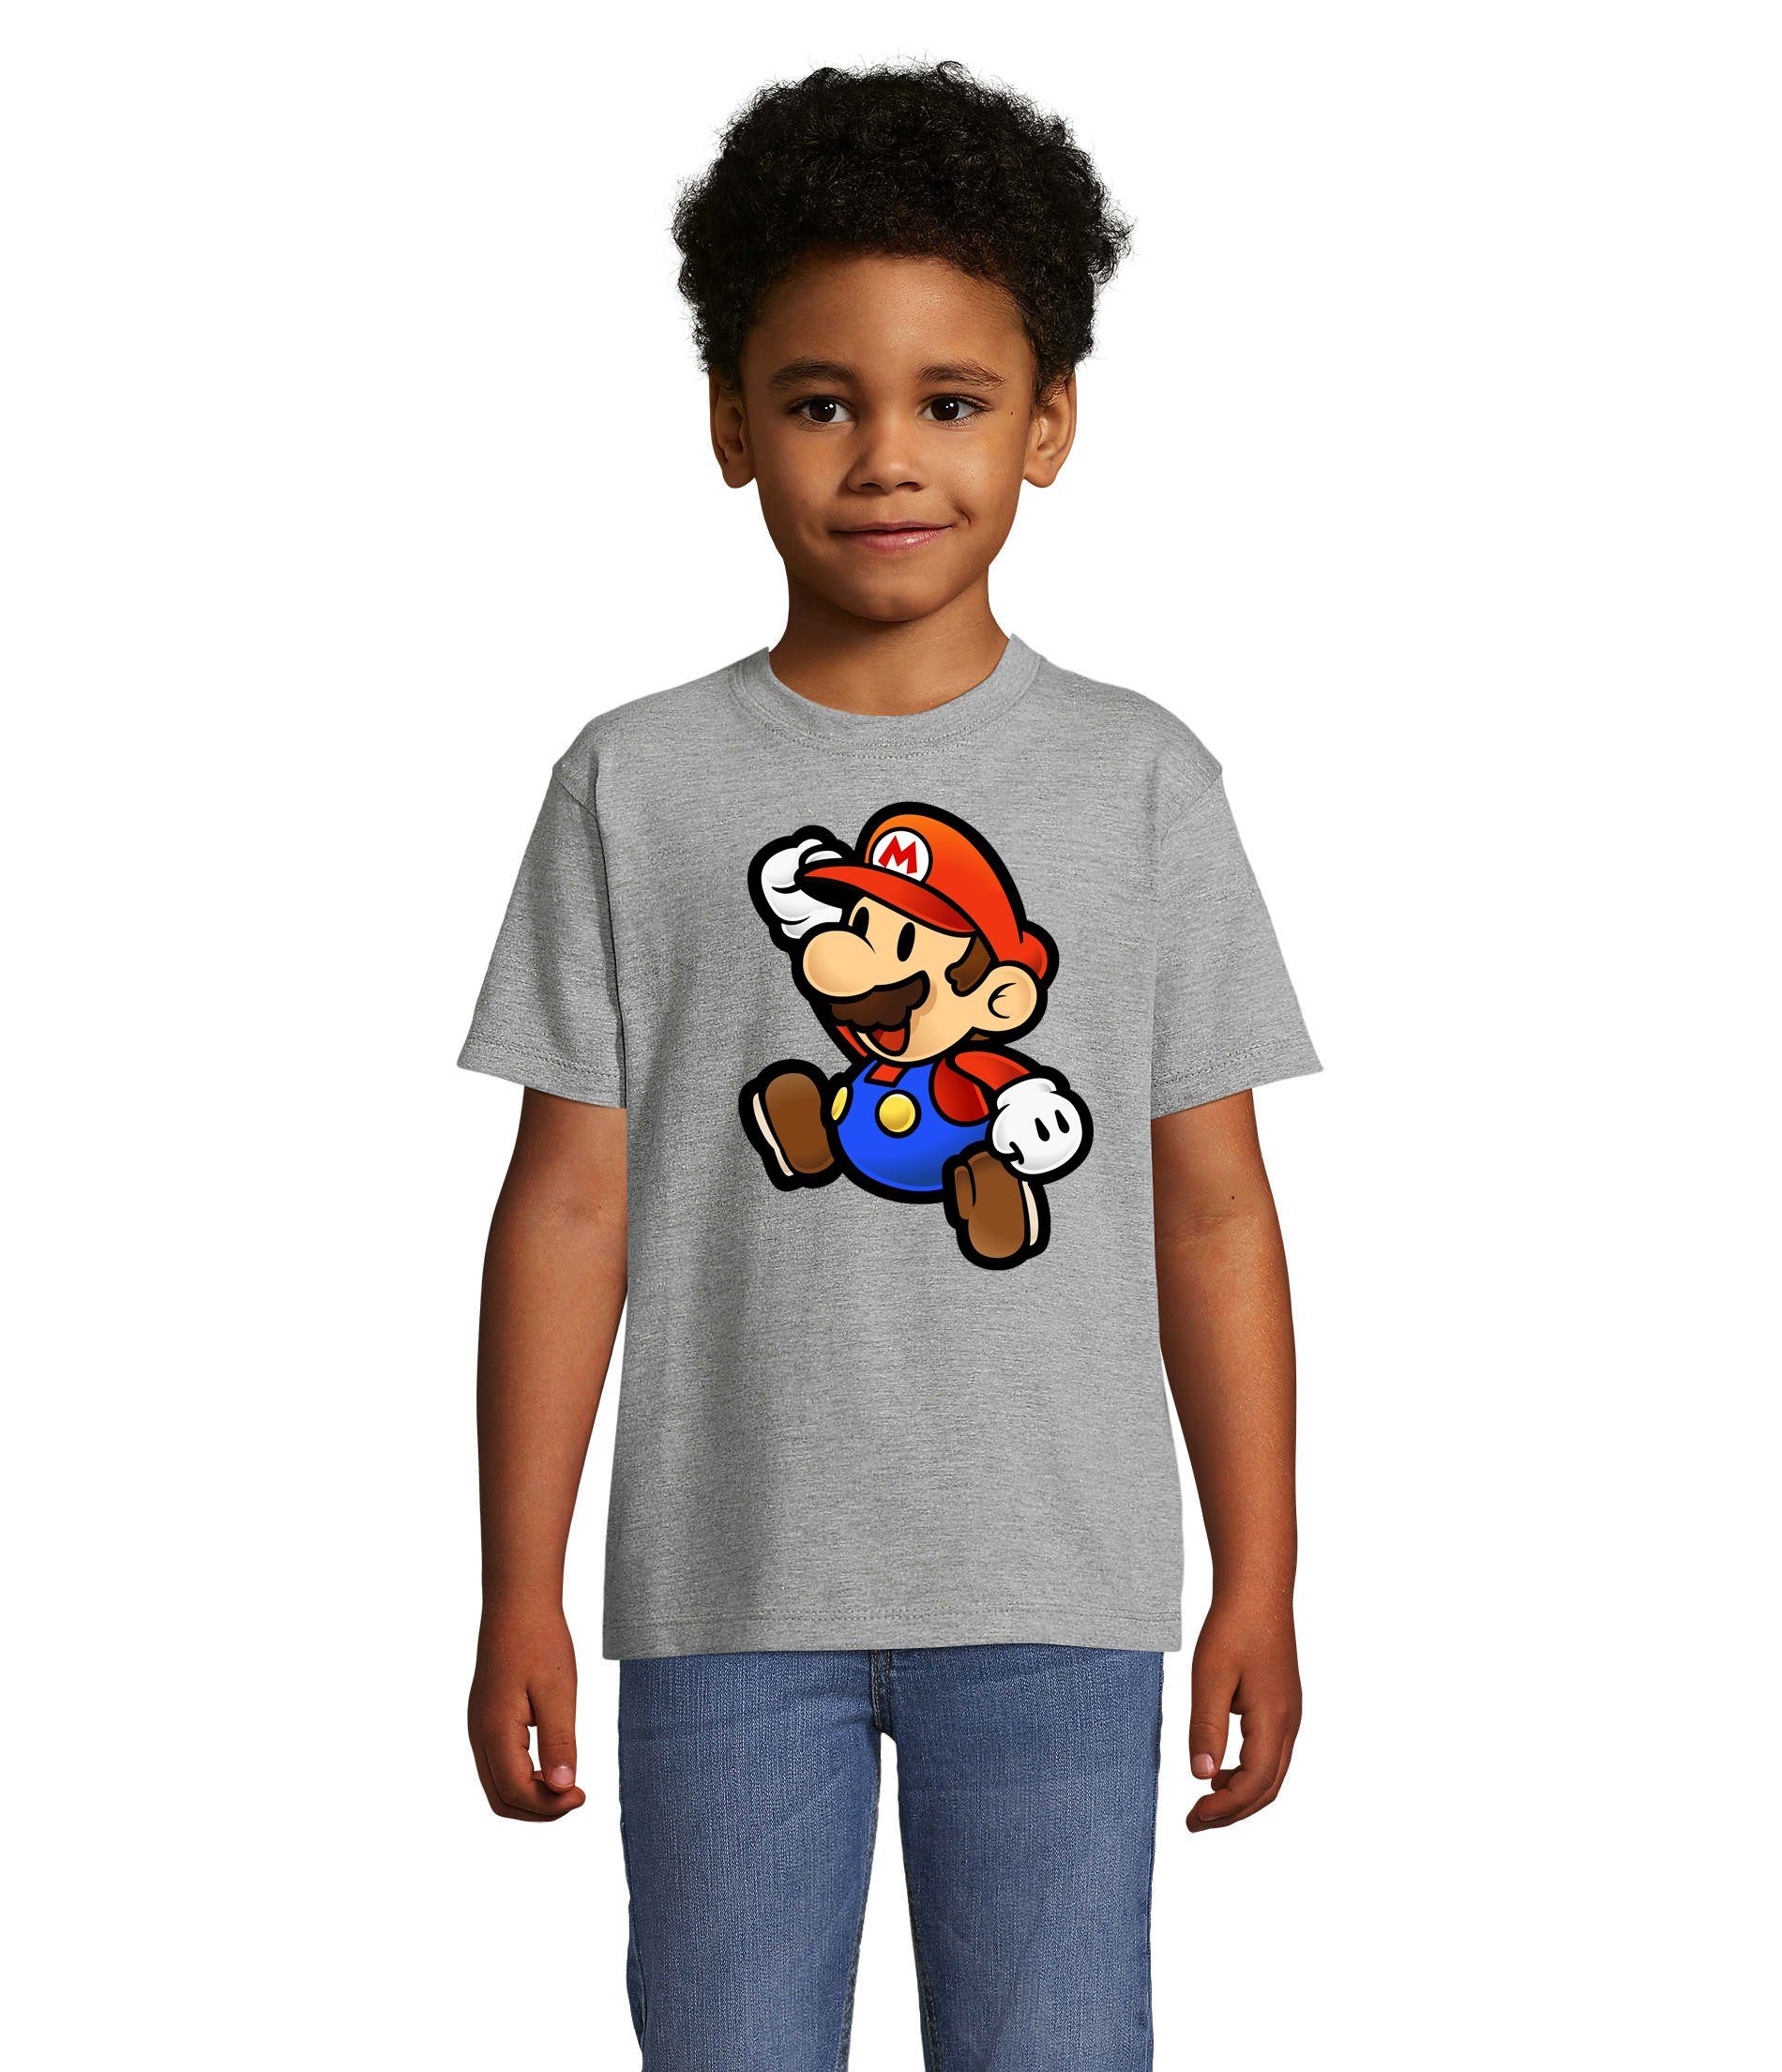 Blondie & Brownie T-Shirt Kinder Jungen & Mädchen Mario Nintendo Gaming Luigi Yoshi Super in vielen Farben Grau | T-Shirts